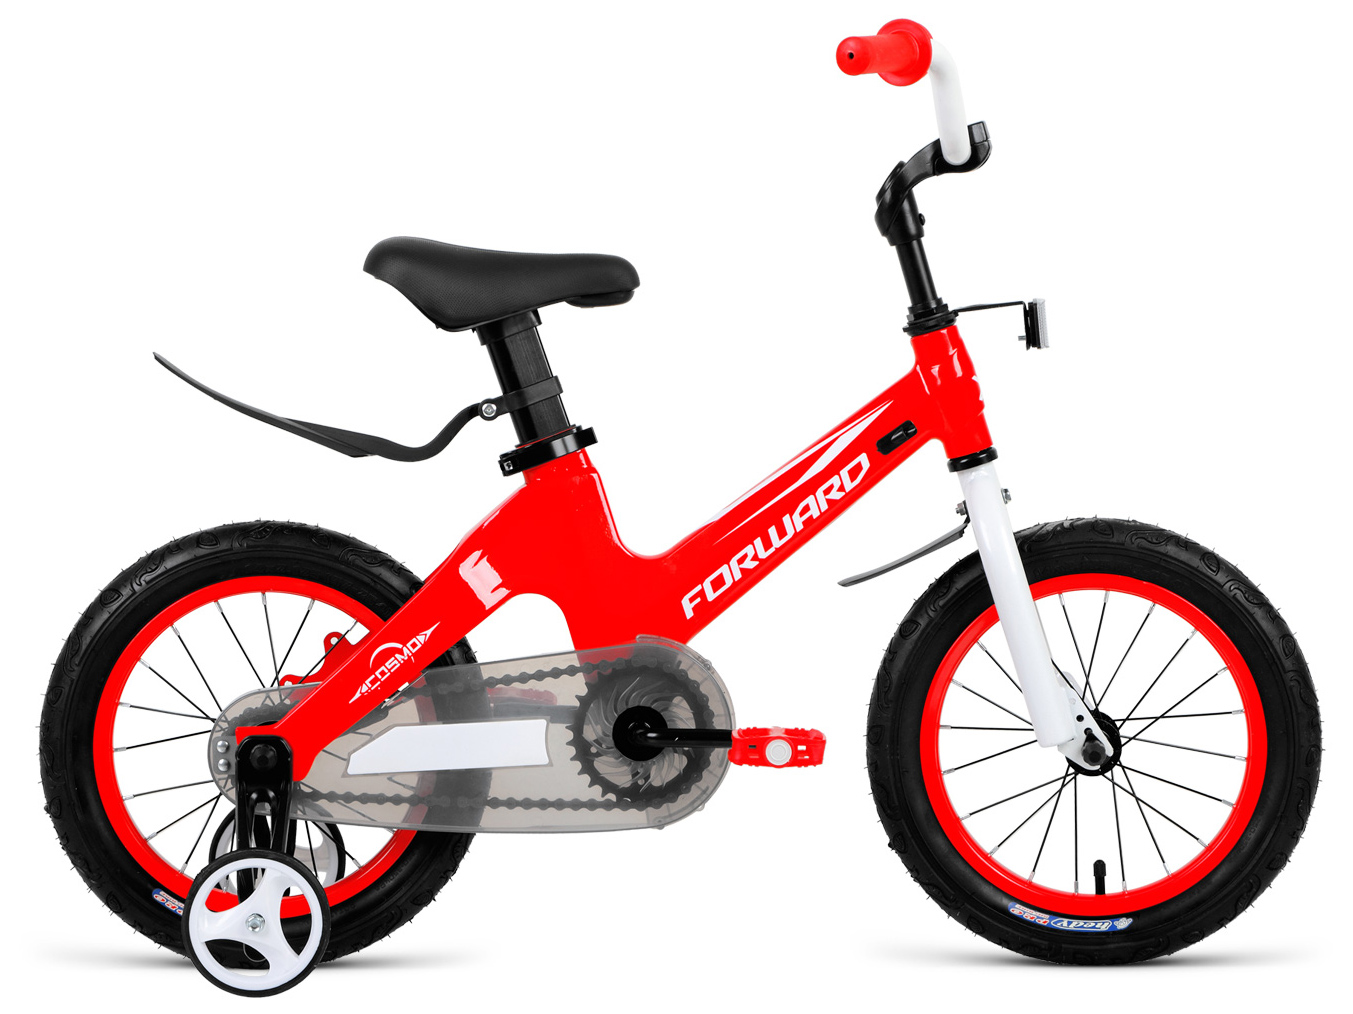  Отзывы о Детском велосипеде Forward Cosmo 14 2019